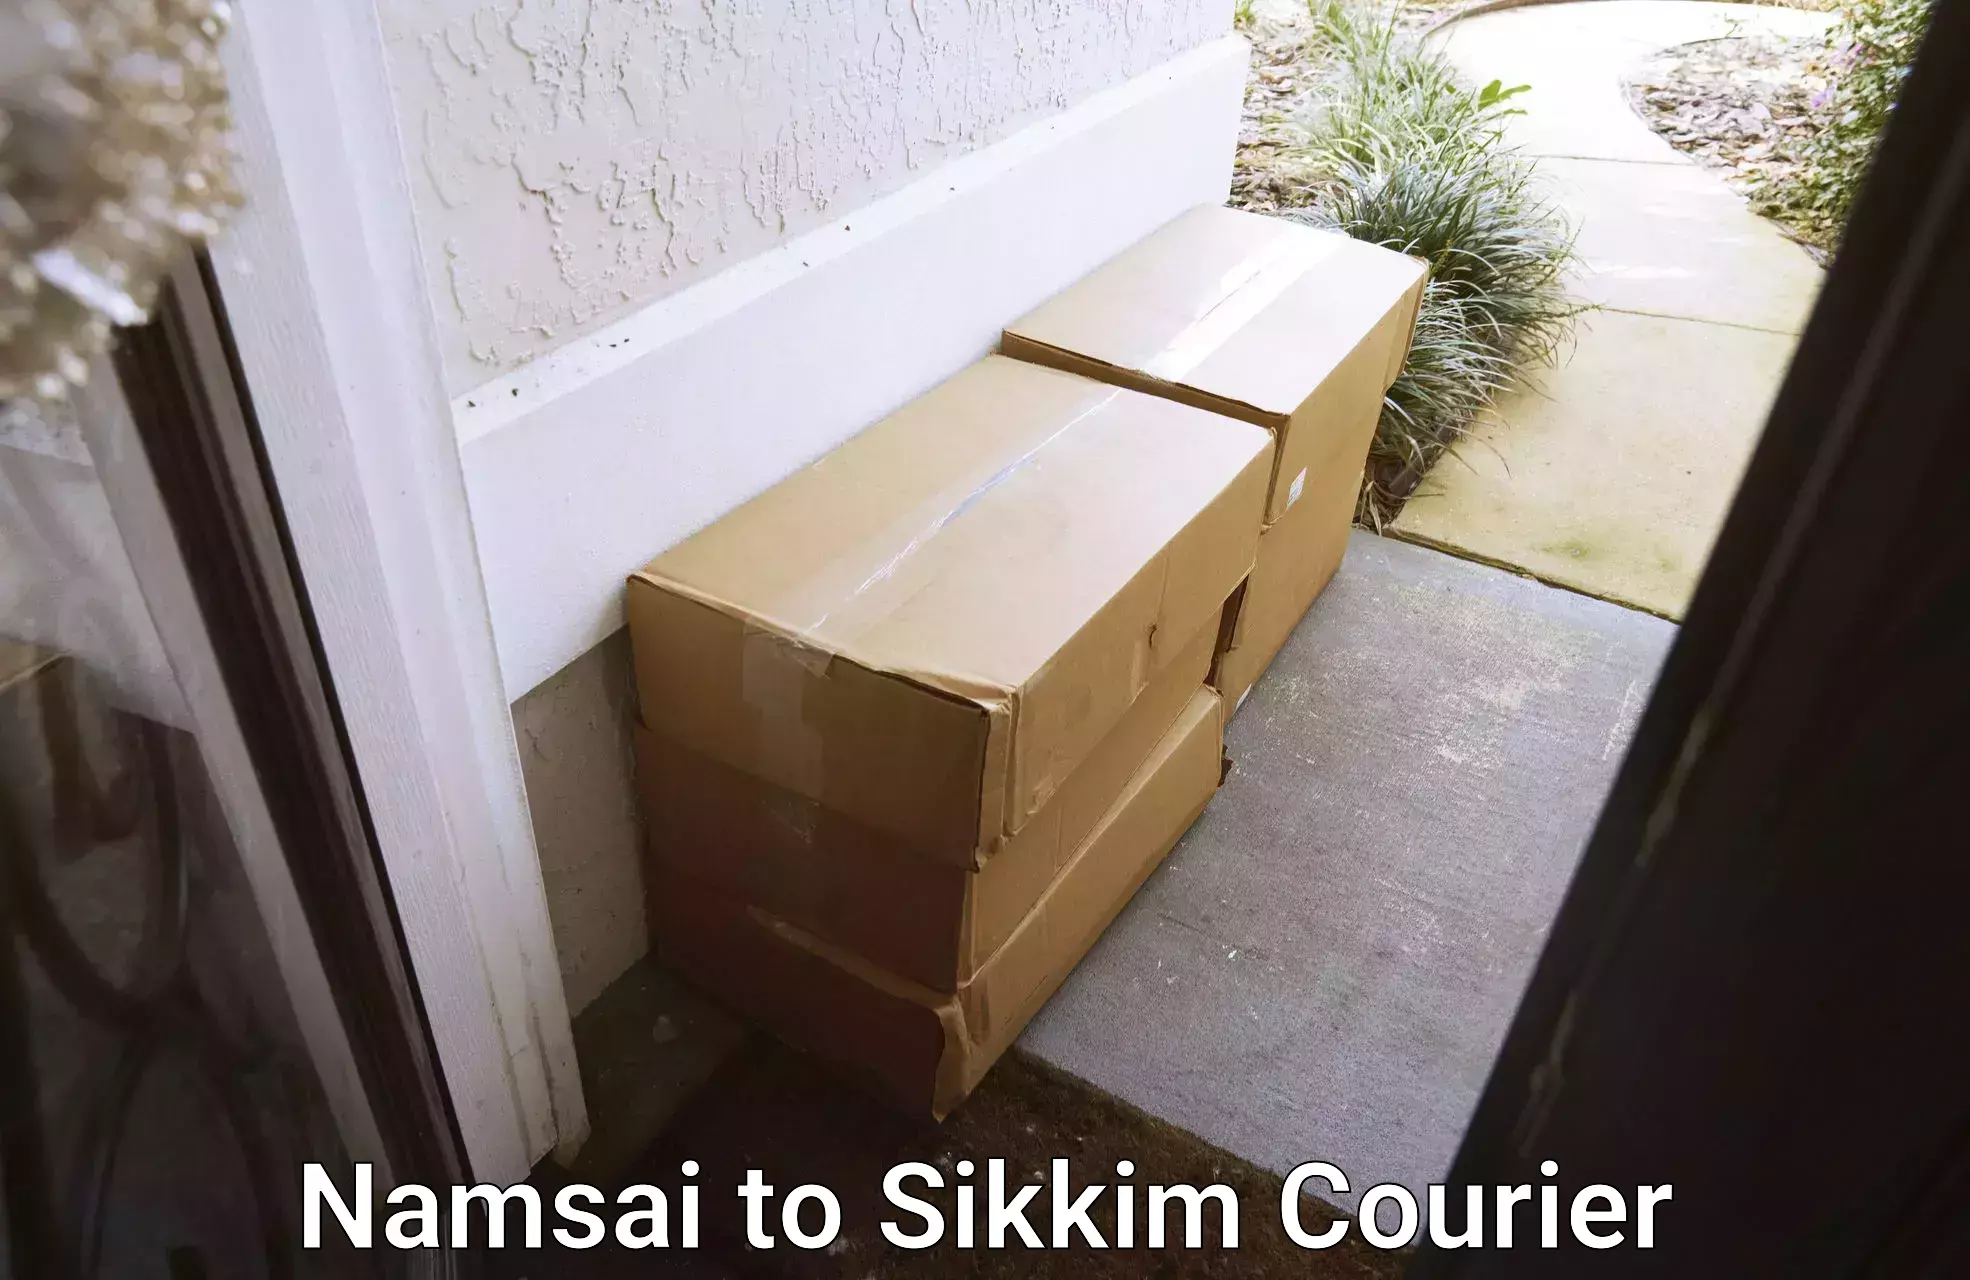 Efficient cargo handling Namsai to Sikkim